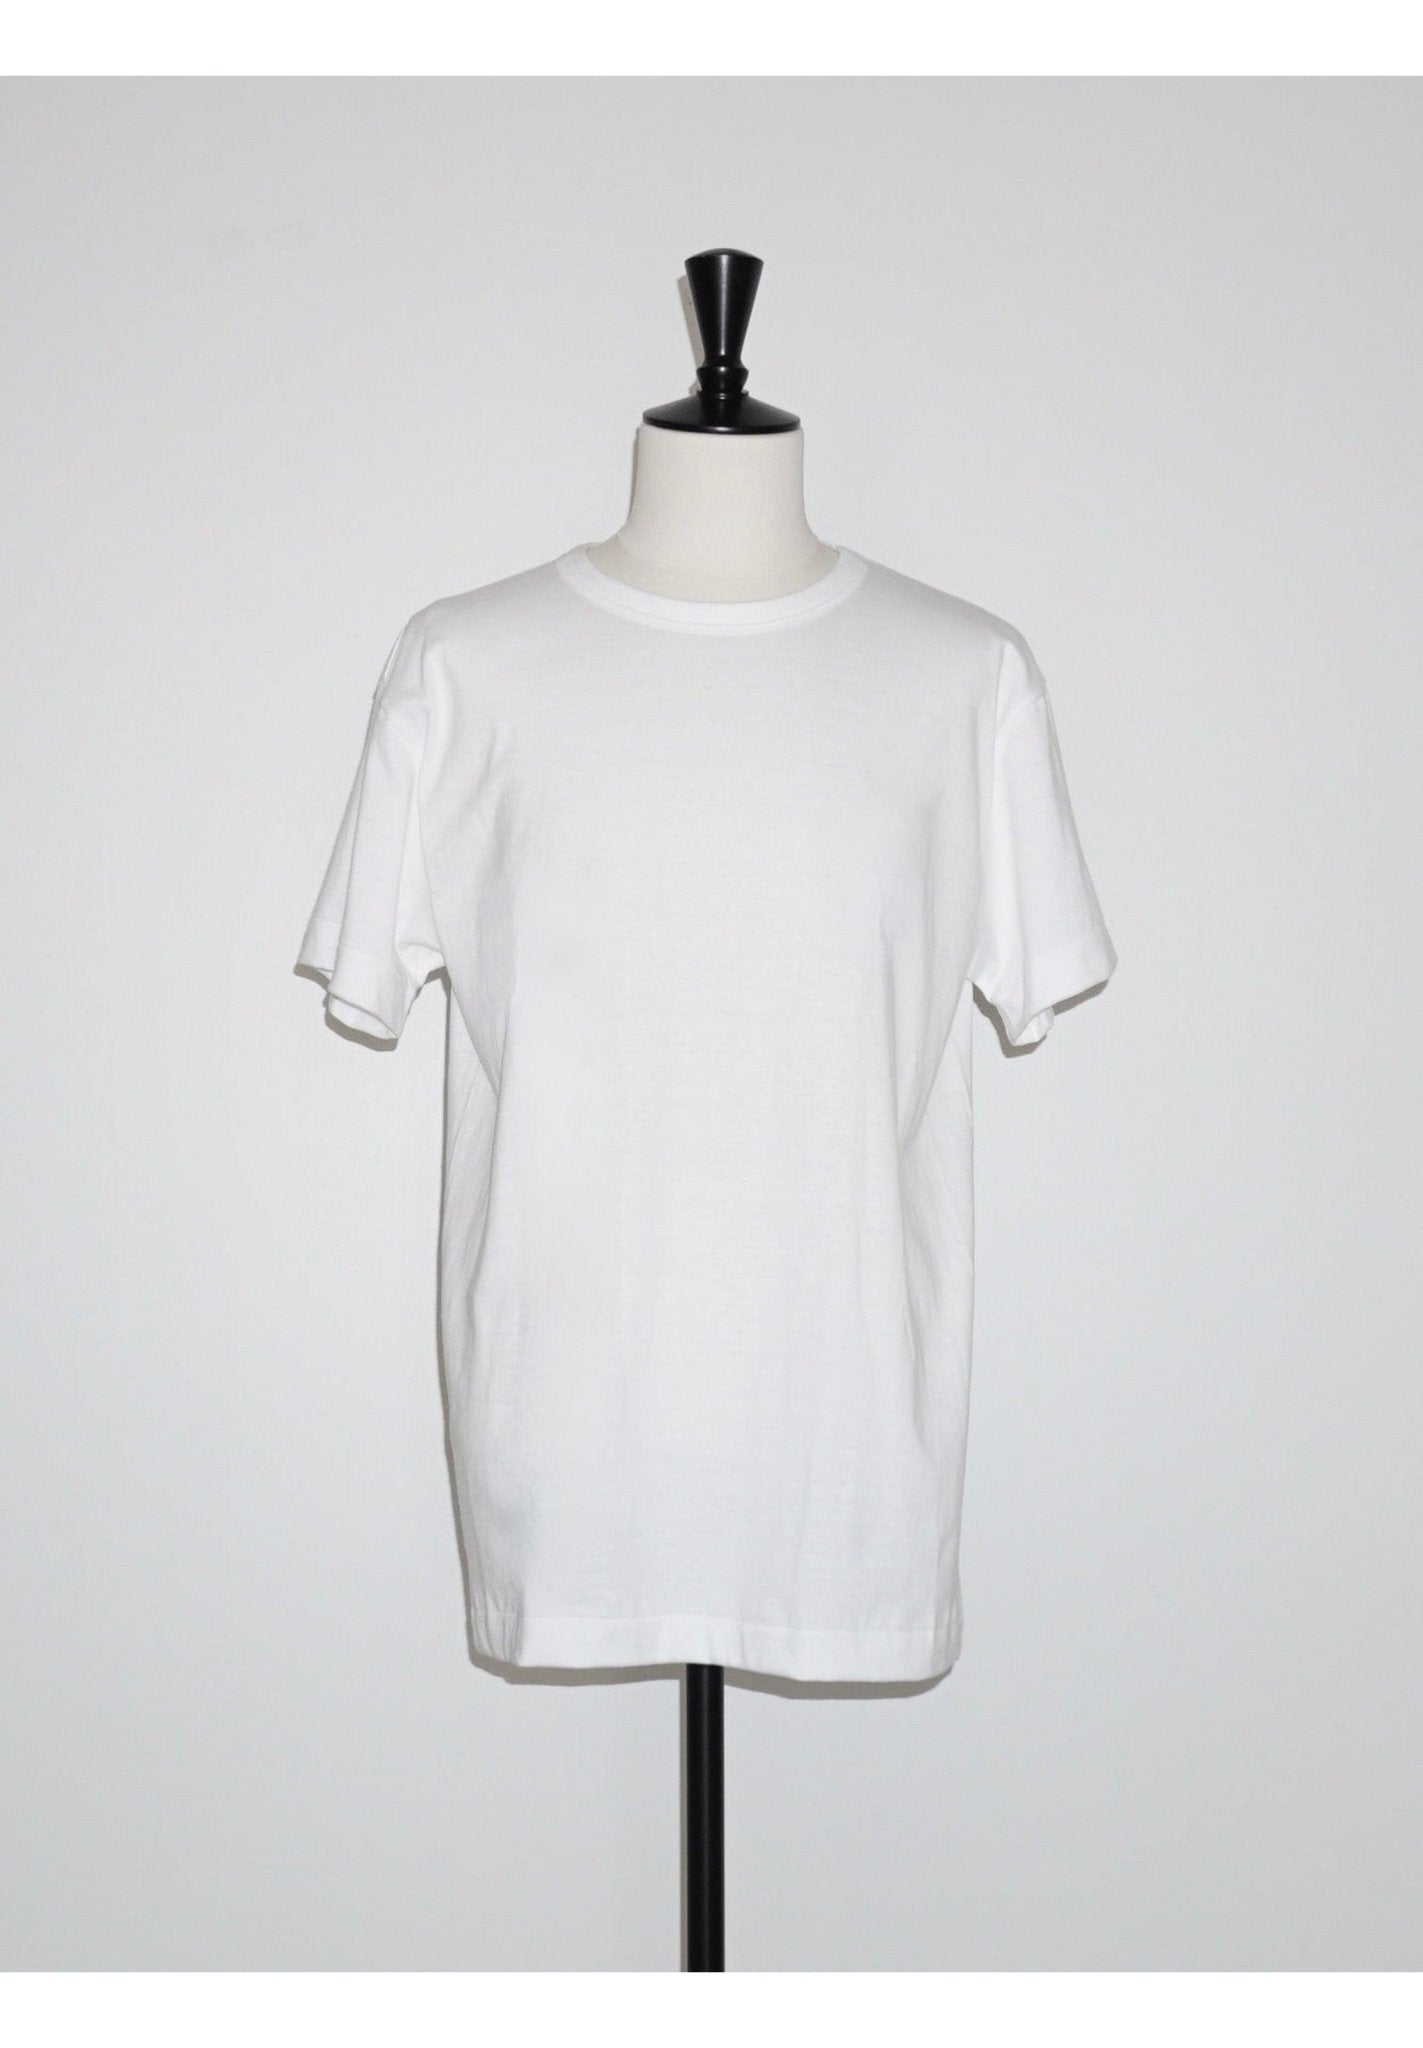 [KUME.JP] 02T-SHIRT Tシャツ - #shop_name #アパルティール# #名古屋# #セレクトショップ#